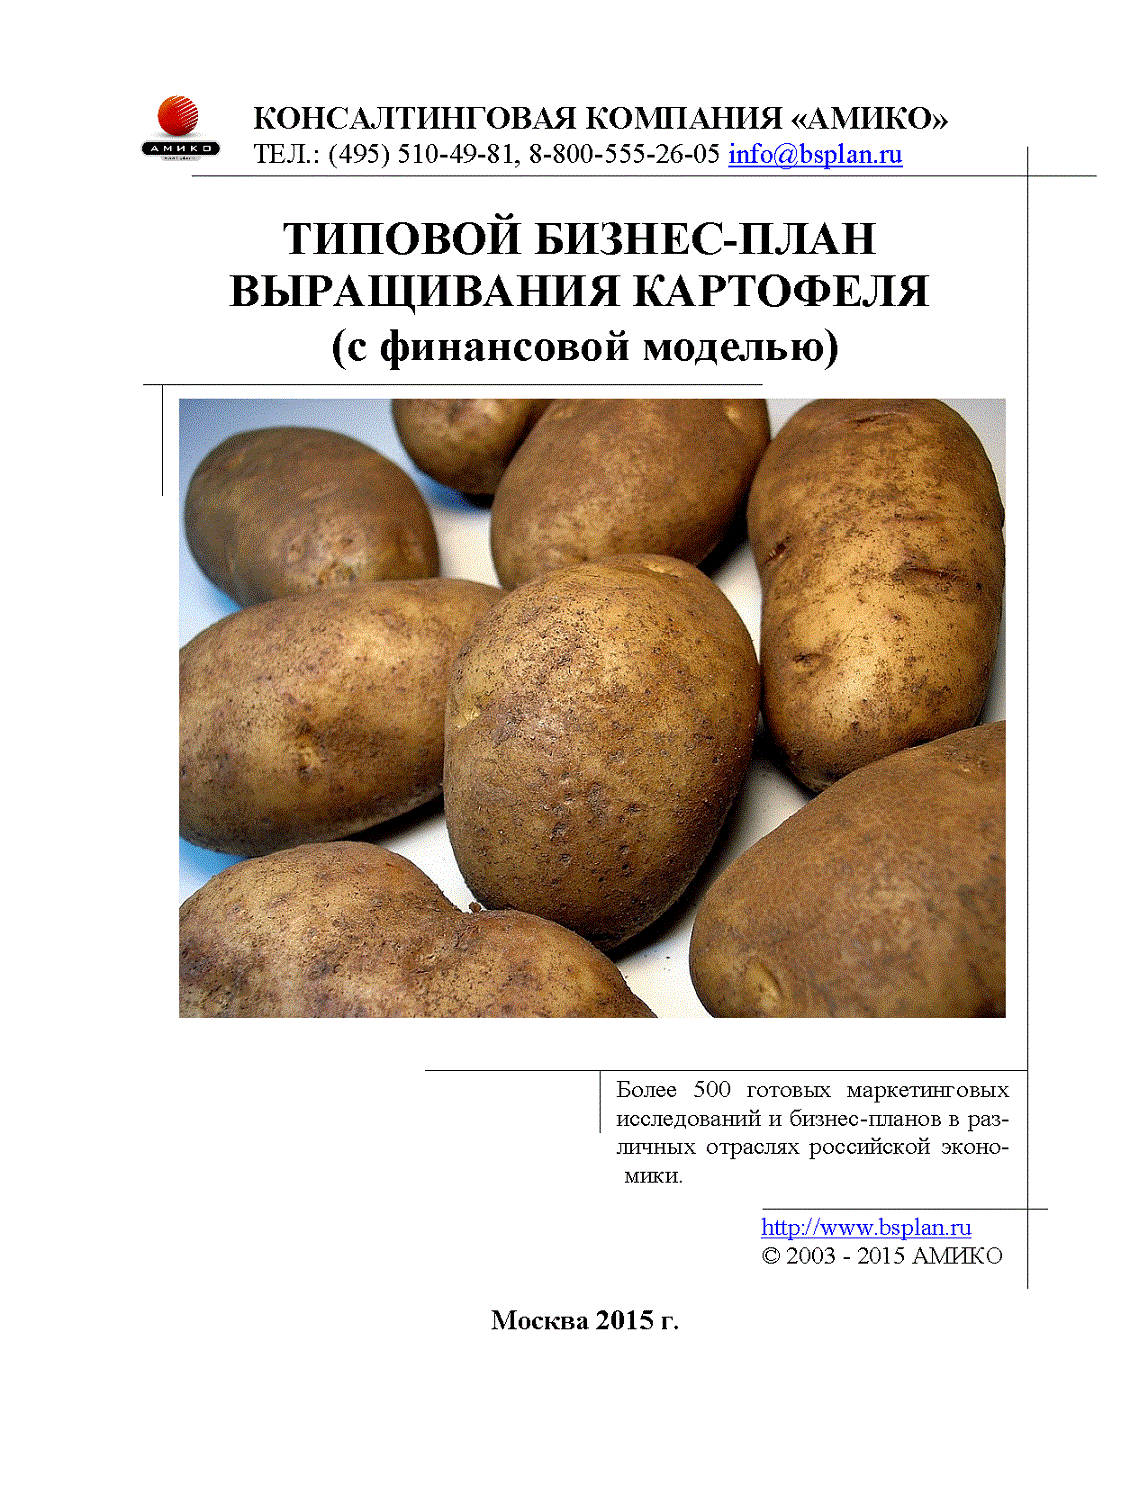 Бизнес план по выращиванию картофеля на продажу - технология бизнеса